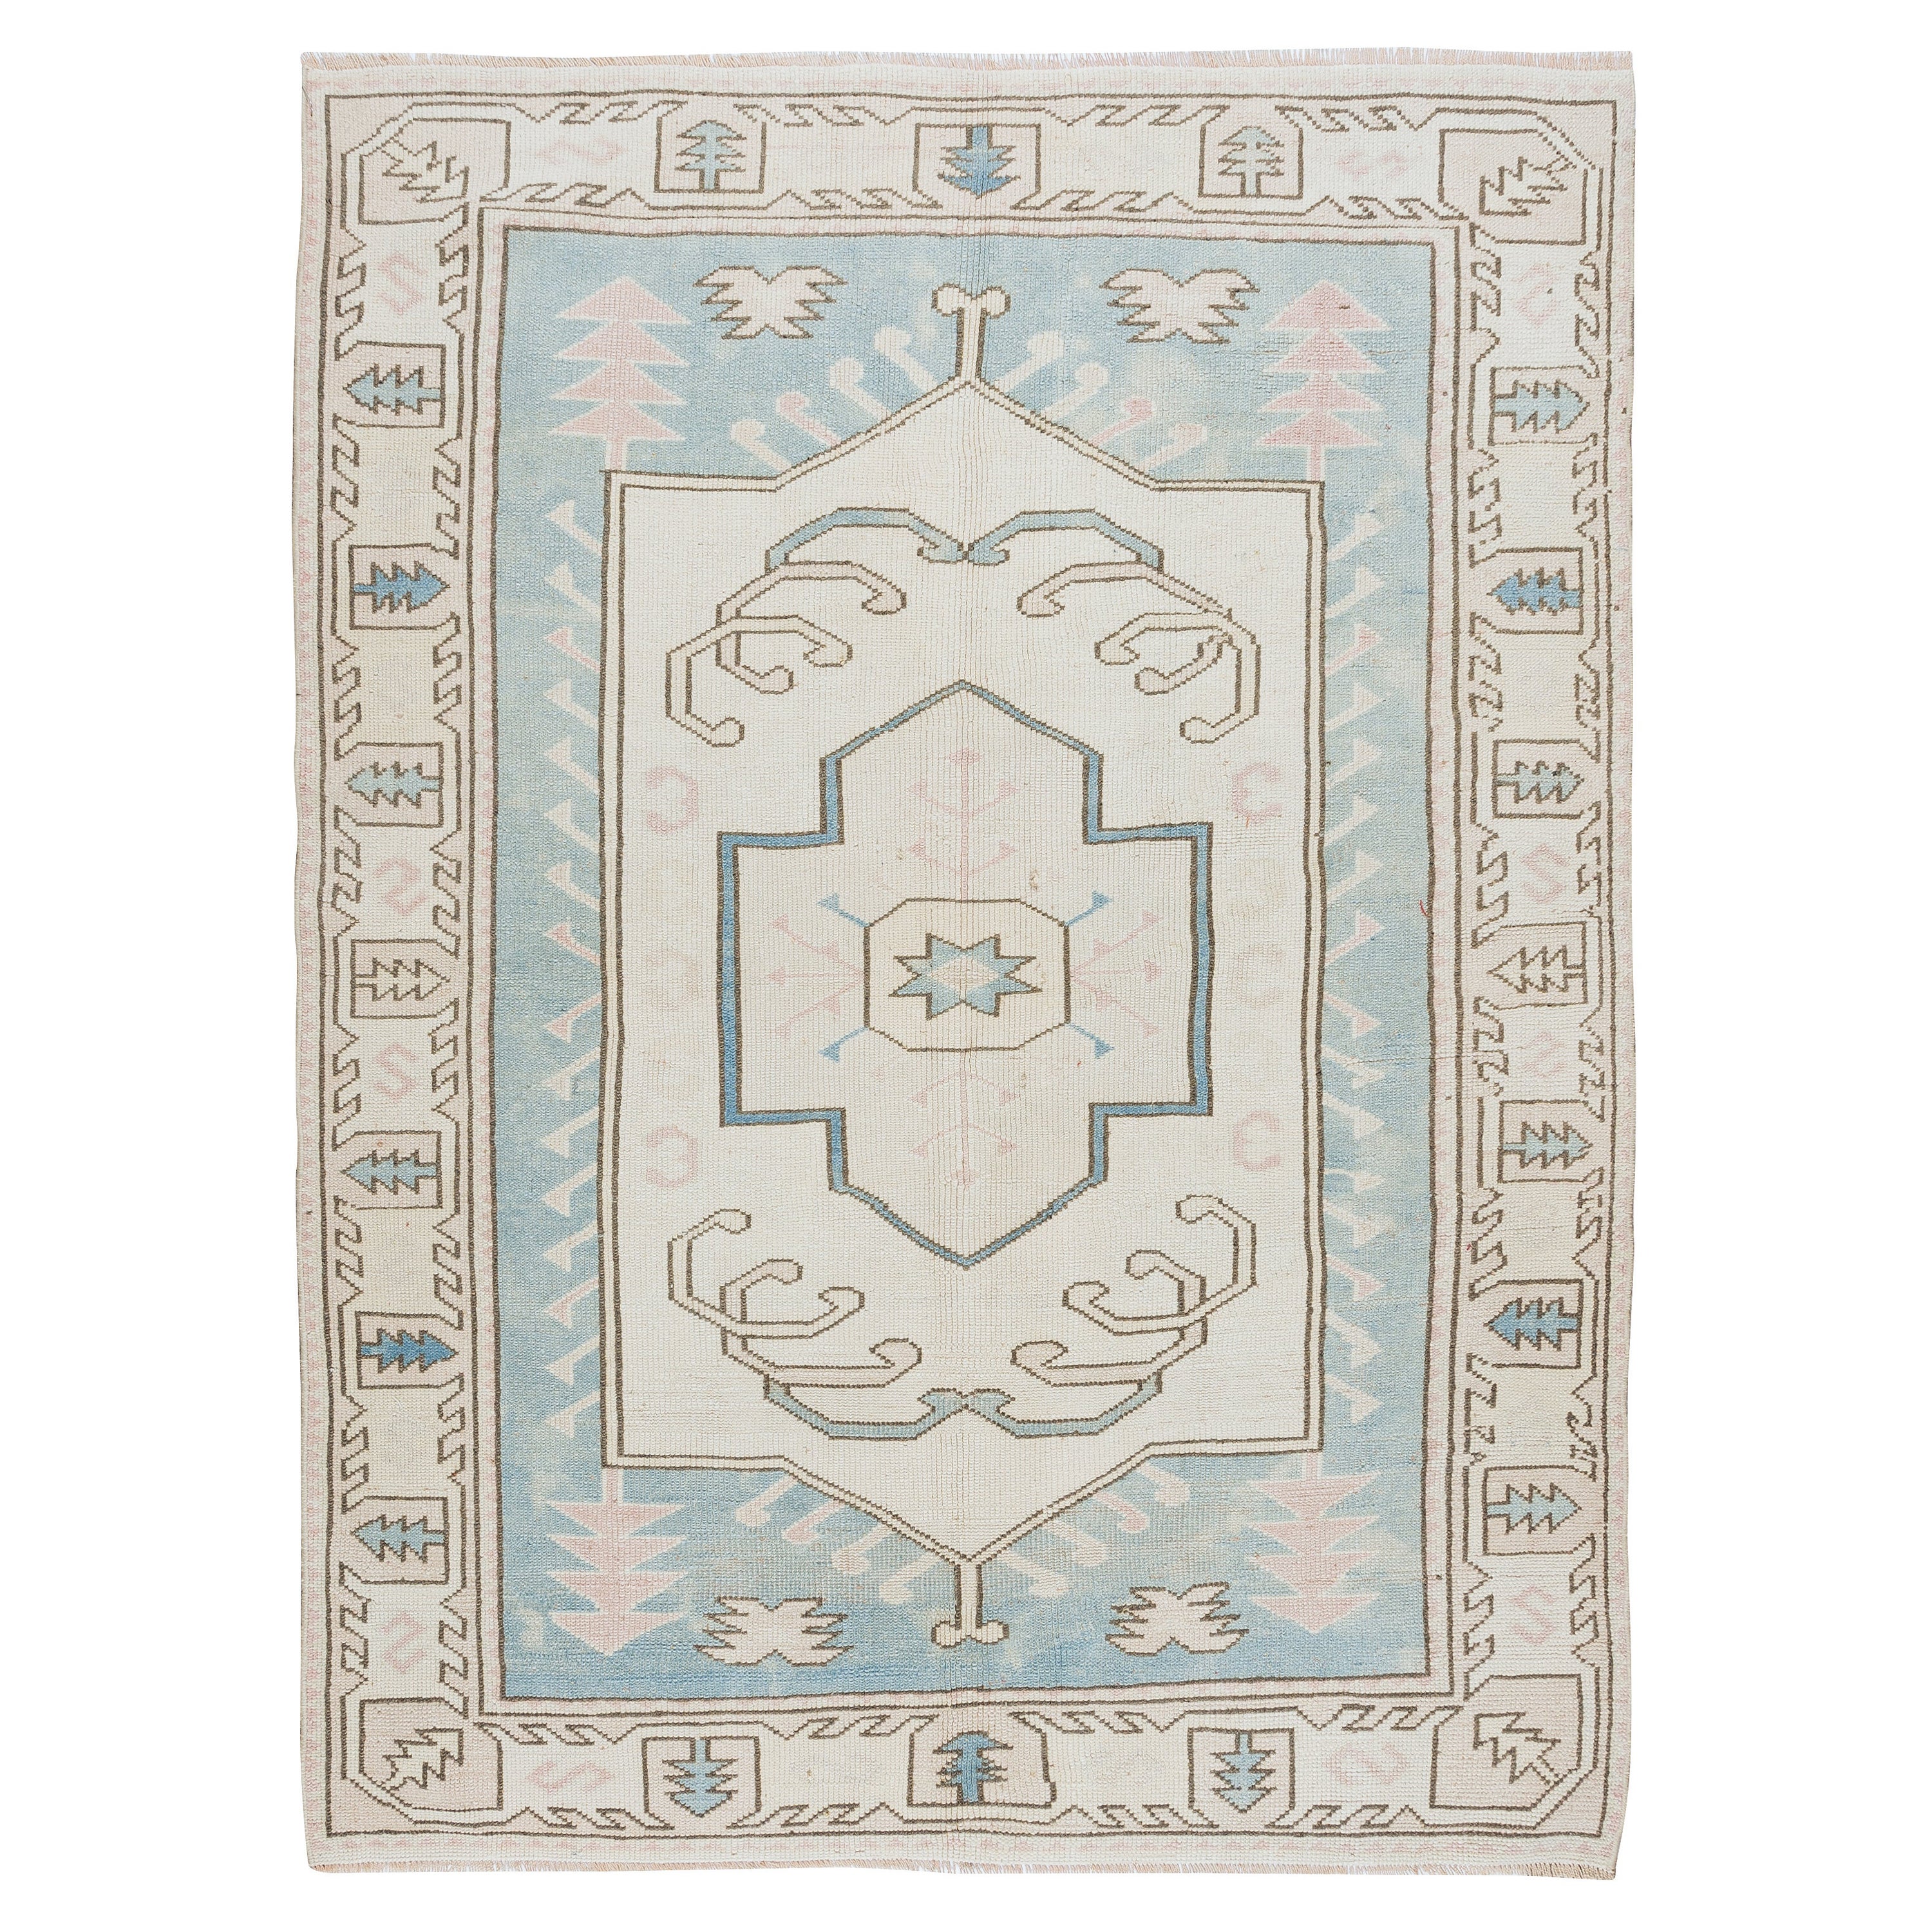 5x6.6 Ft Modernity Handmade Turkish Geometric Wool Area Rug in Light Blue & Cream (Tapis de laine géométrique turc fait main en bleu clair et crème)